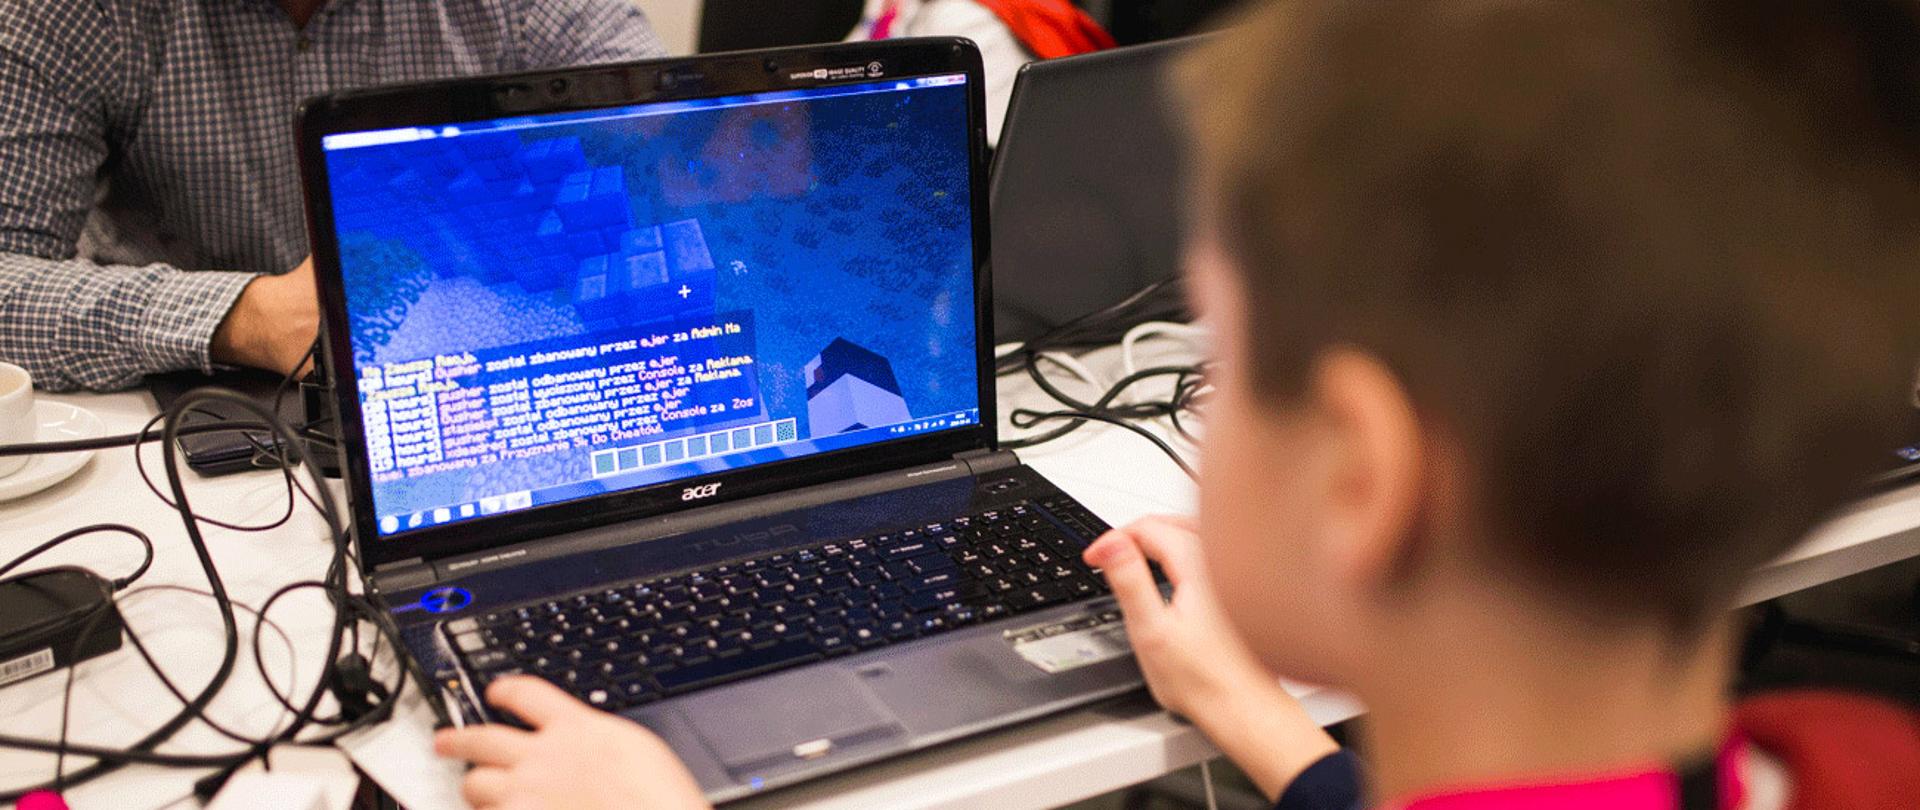 Na zdjęciu widać chłopca korzystającego z laptopa, którego ekran pokazuje popularną grę Minecraft. Przy tym samym stole siedzi przy laptopach więcej osób.